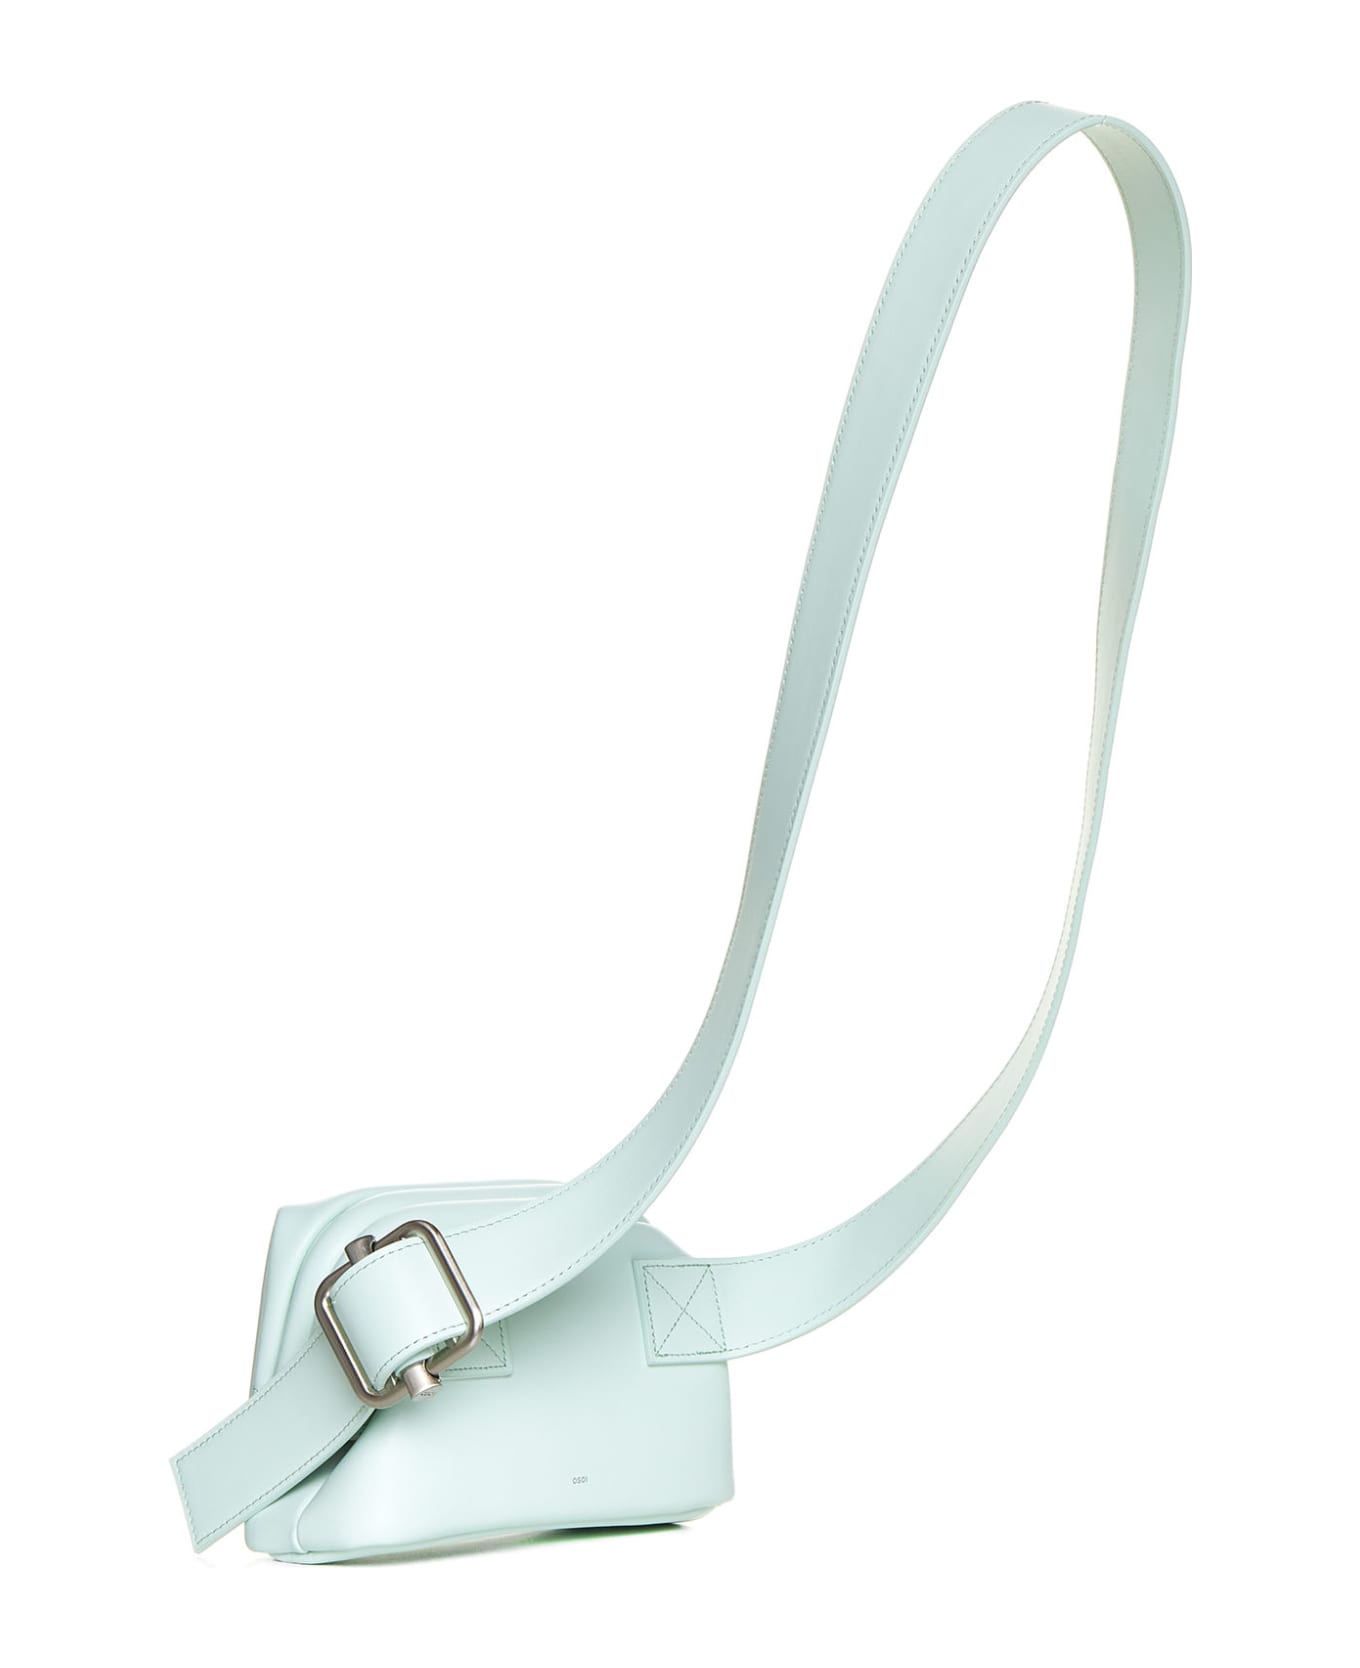 OSOI Shoulder Bag - Light mint ショルダーバッグ